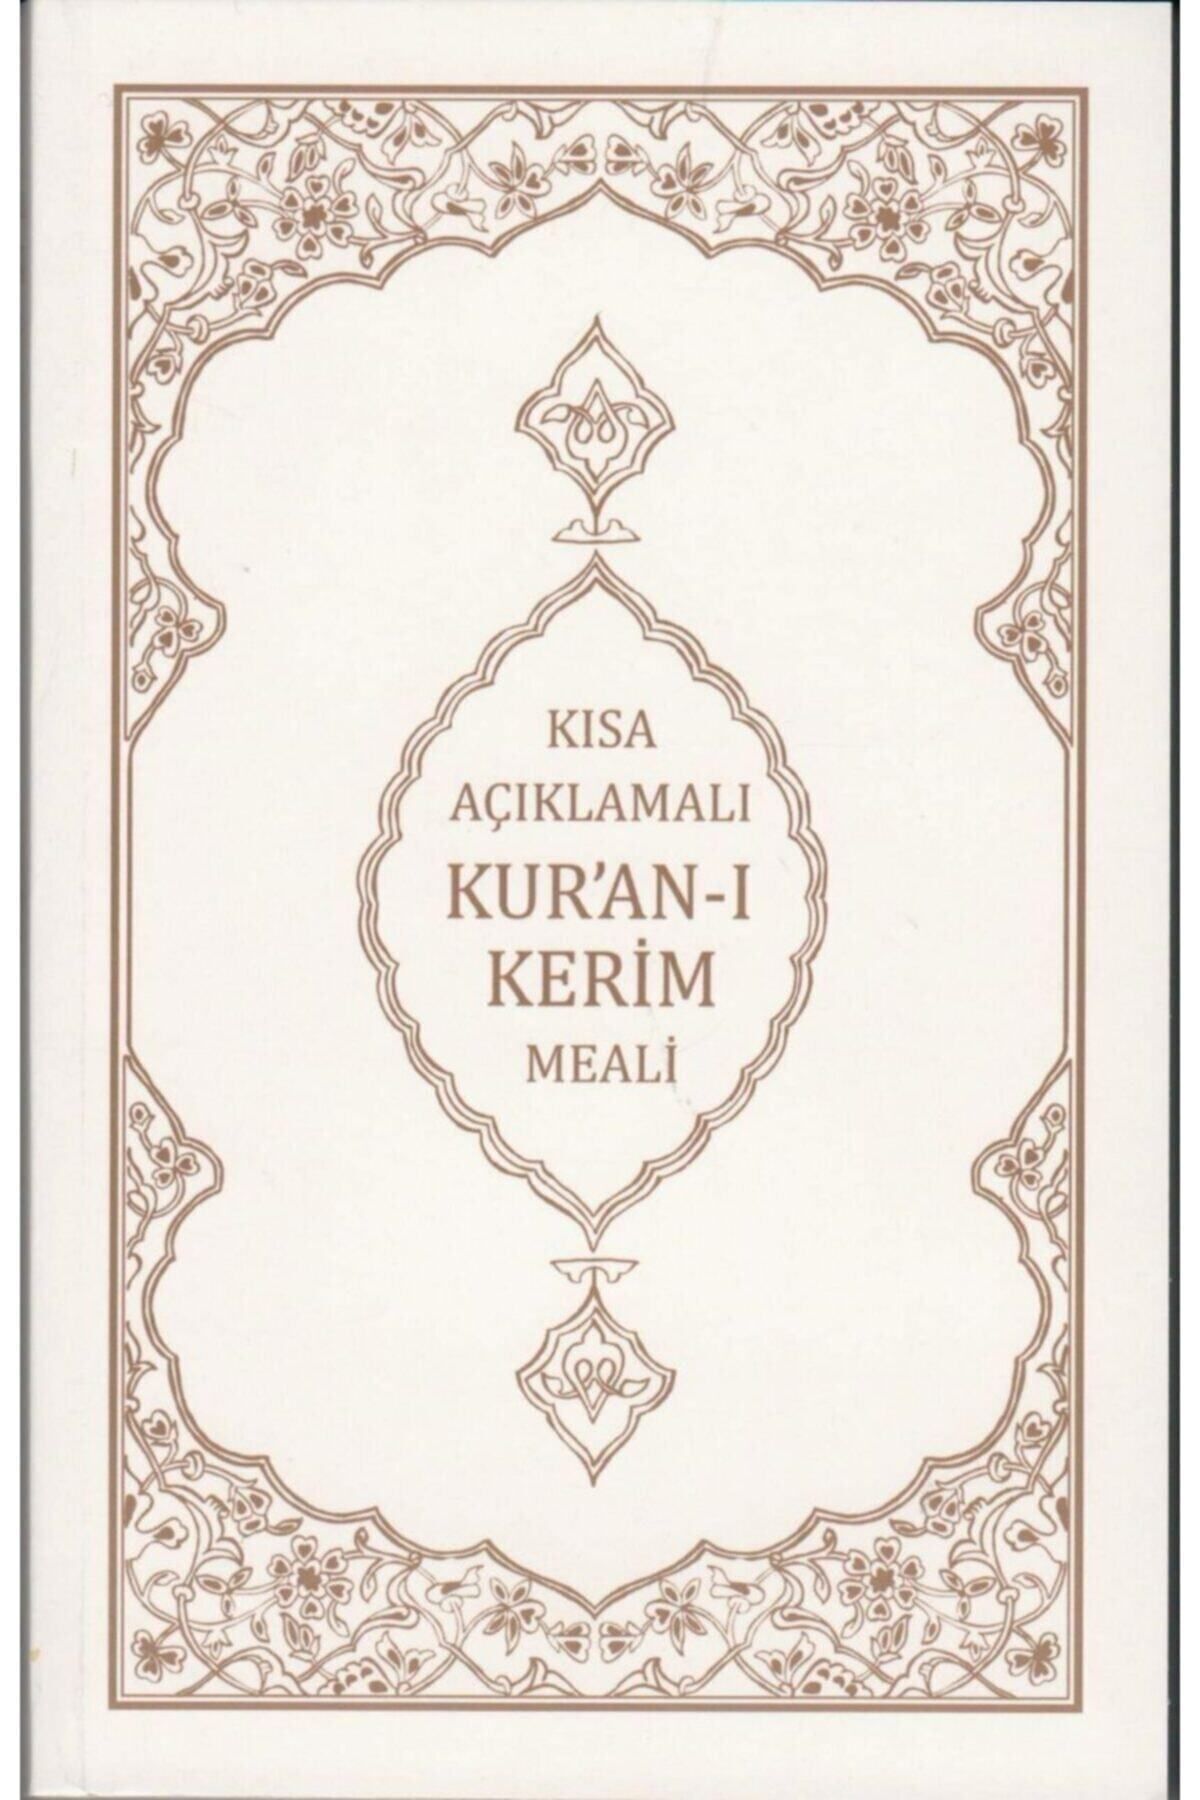 Armağan Kitaplar Kısa Açıklamalı Kuranı Kerim Meali Mahmut Kısa, 14x22 Cm. Karton Kapak